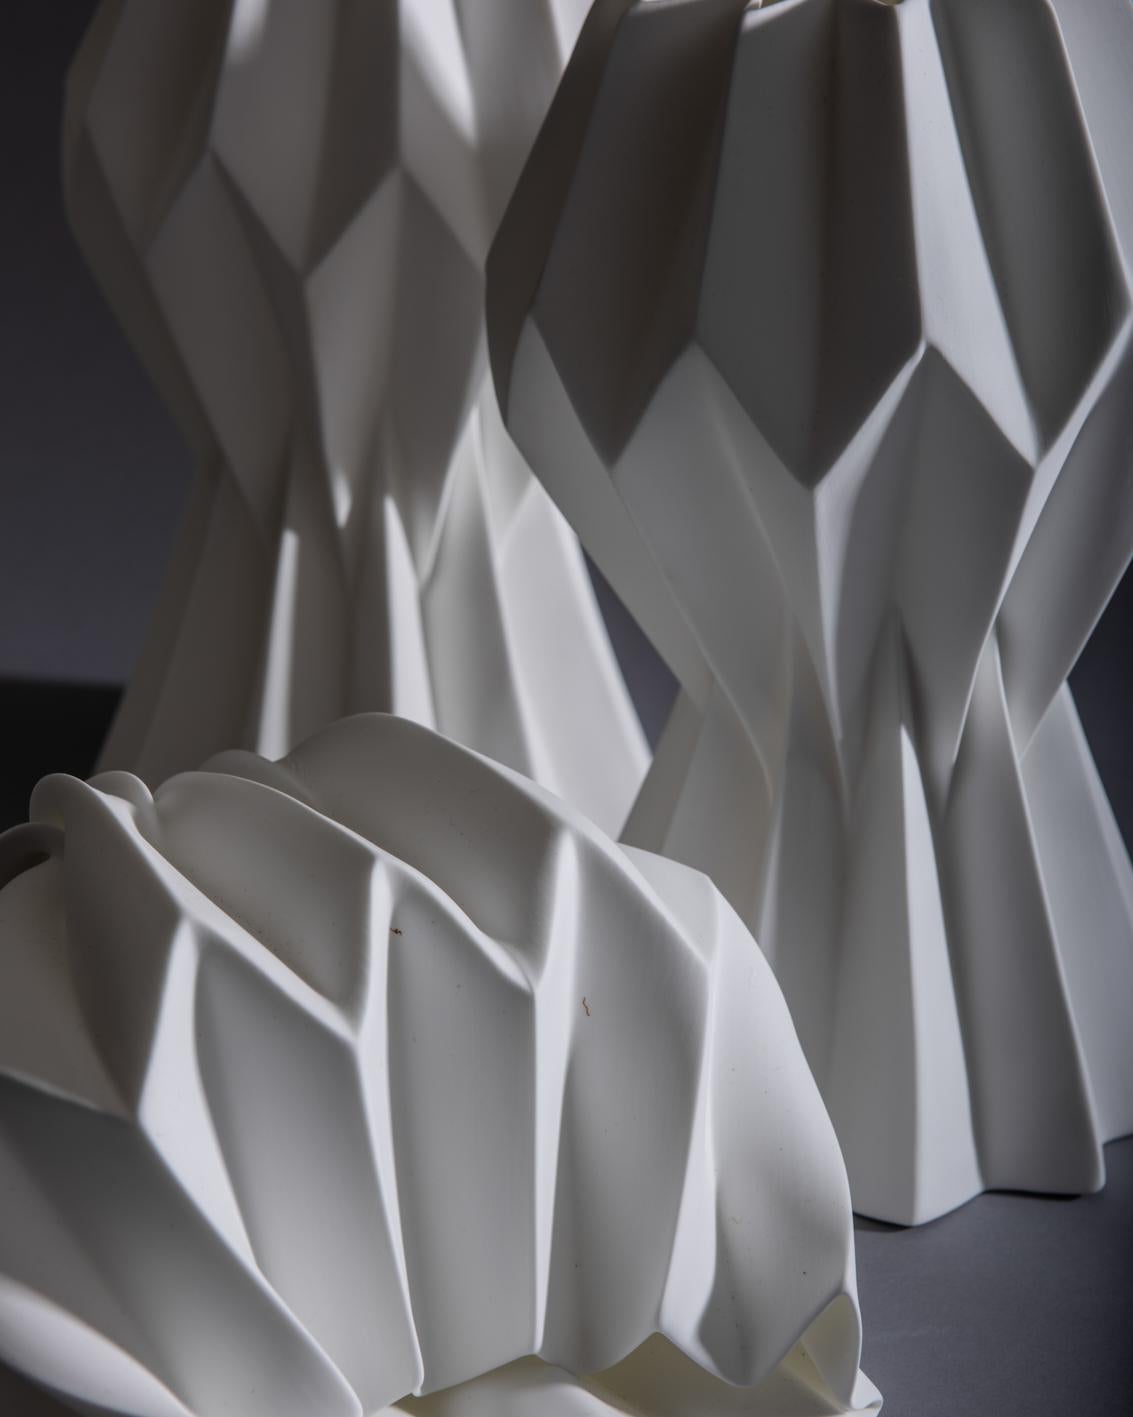 “Slump” Contemporary Origami Ceramic Vase by Studio Morison, No Slump Variation 3